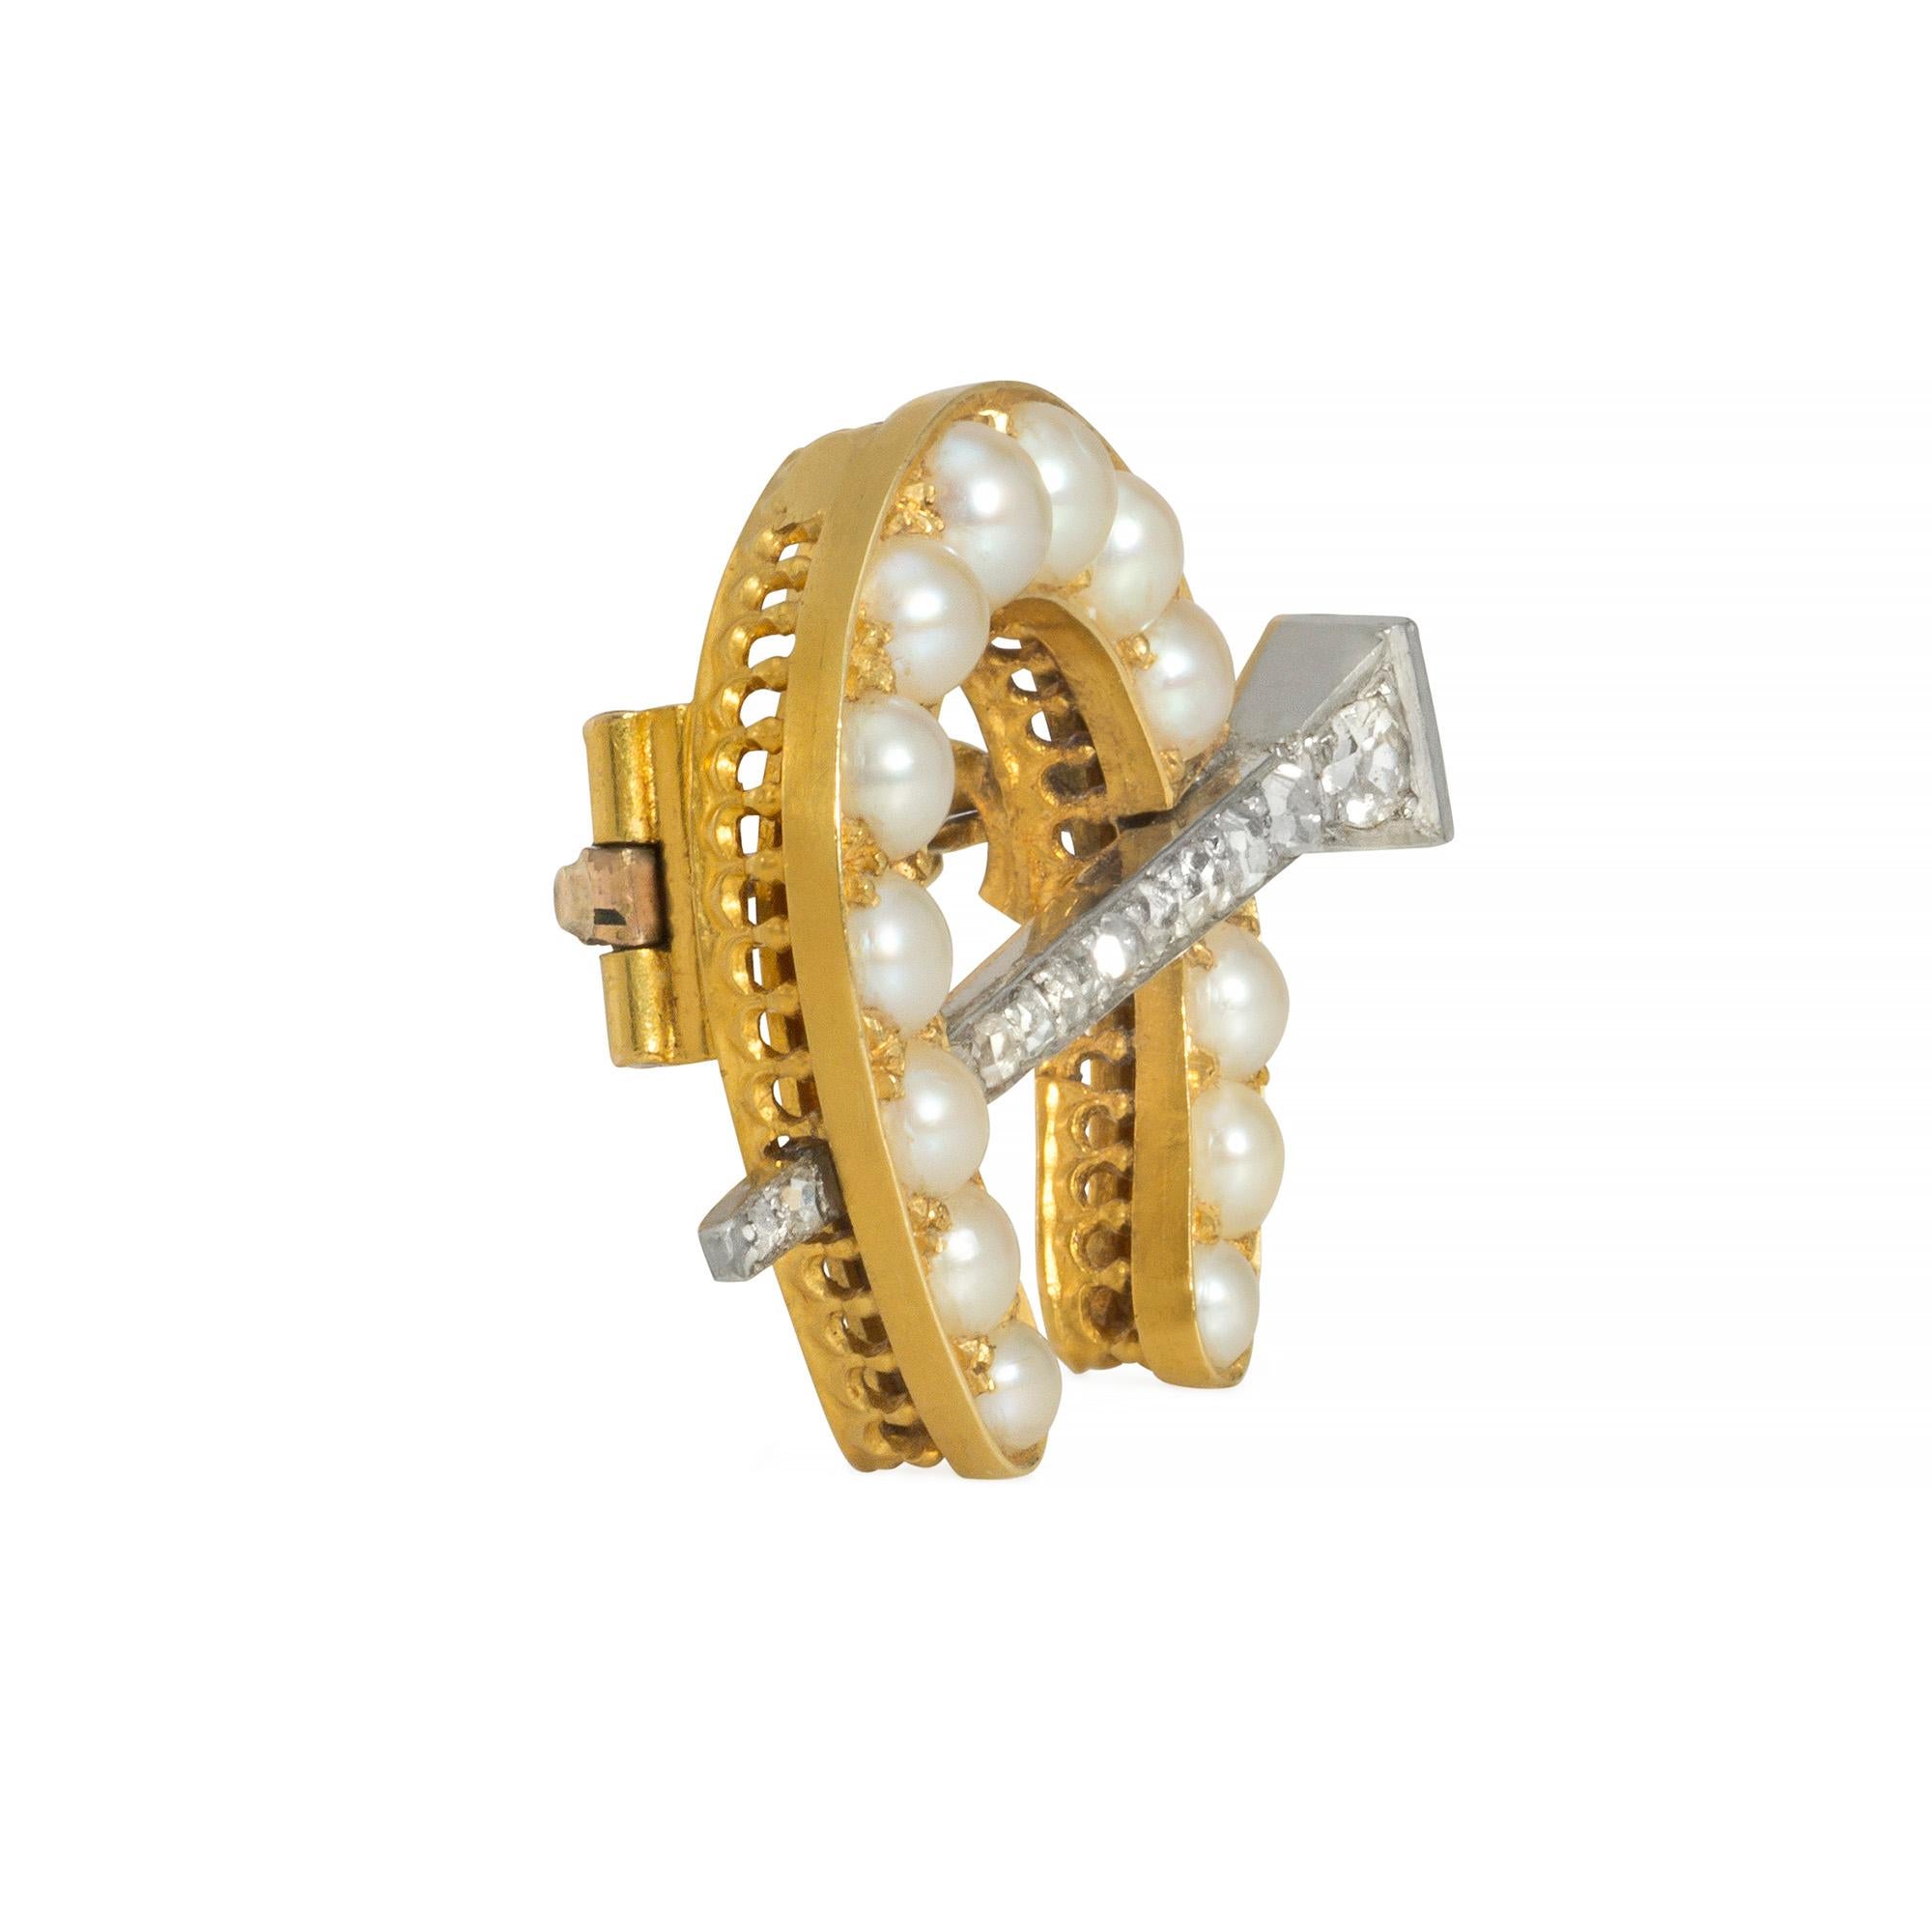 Edwardianische Brosche in Form eines mit Perlen besetzten Hufeisens, durchbrochen von einer Pavé-Diamantnadel, mit Anhängerschlaufe, aus 18 Karat Gold und Platin. 